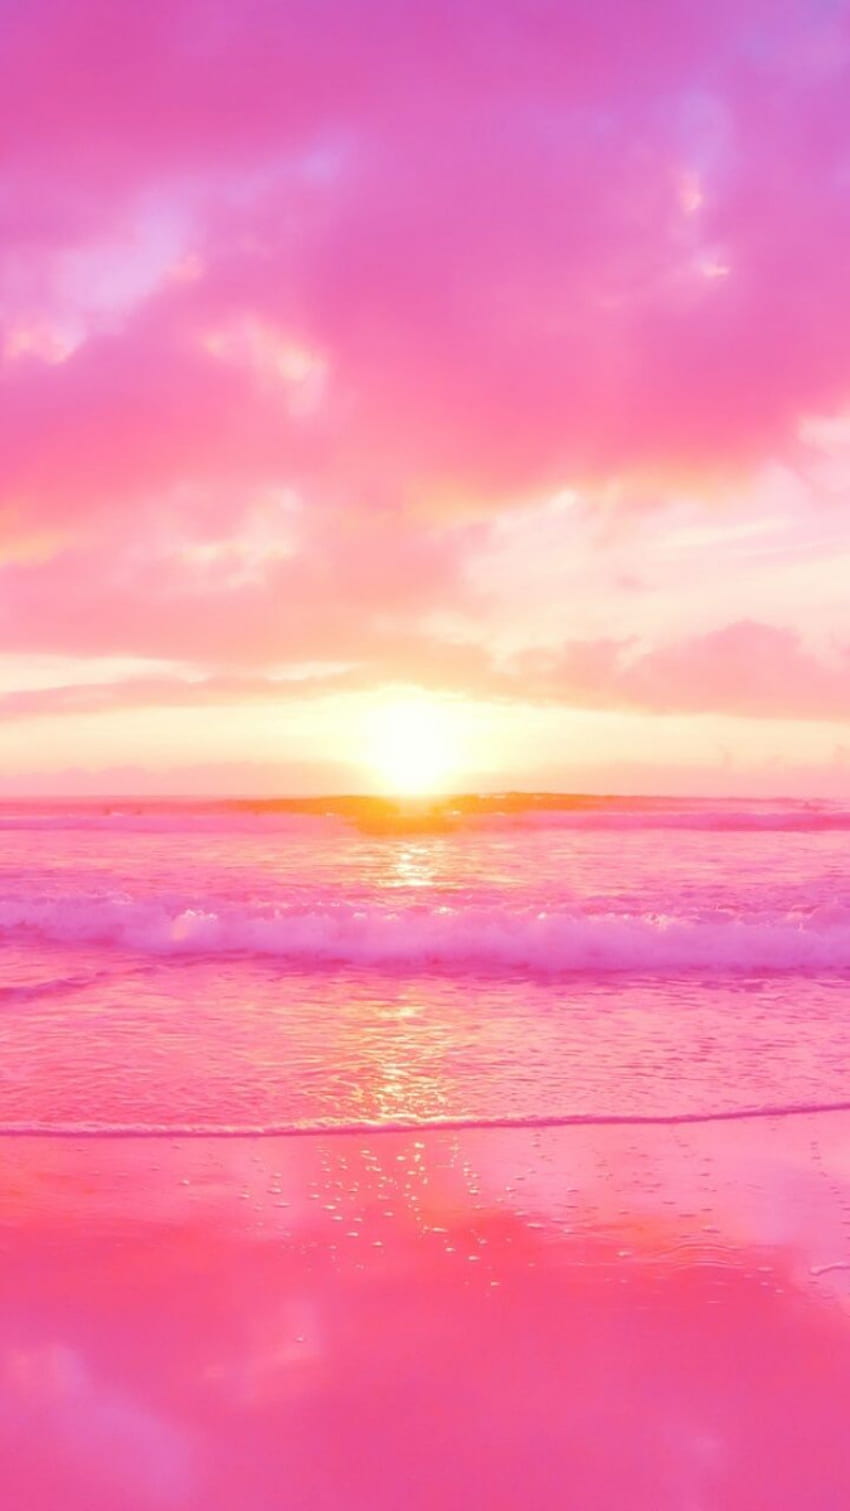 Sangat Lucu Untuk iPhone 2022, Pink Girly Beach wallpaper ponsel HD